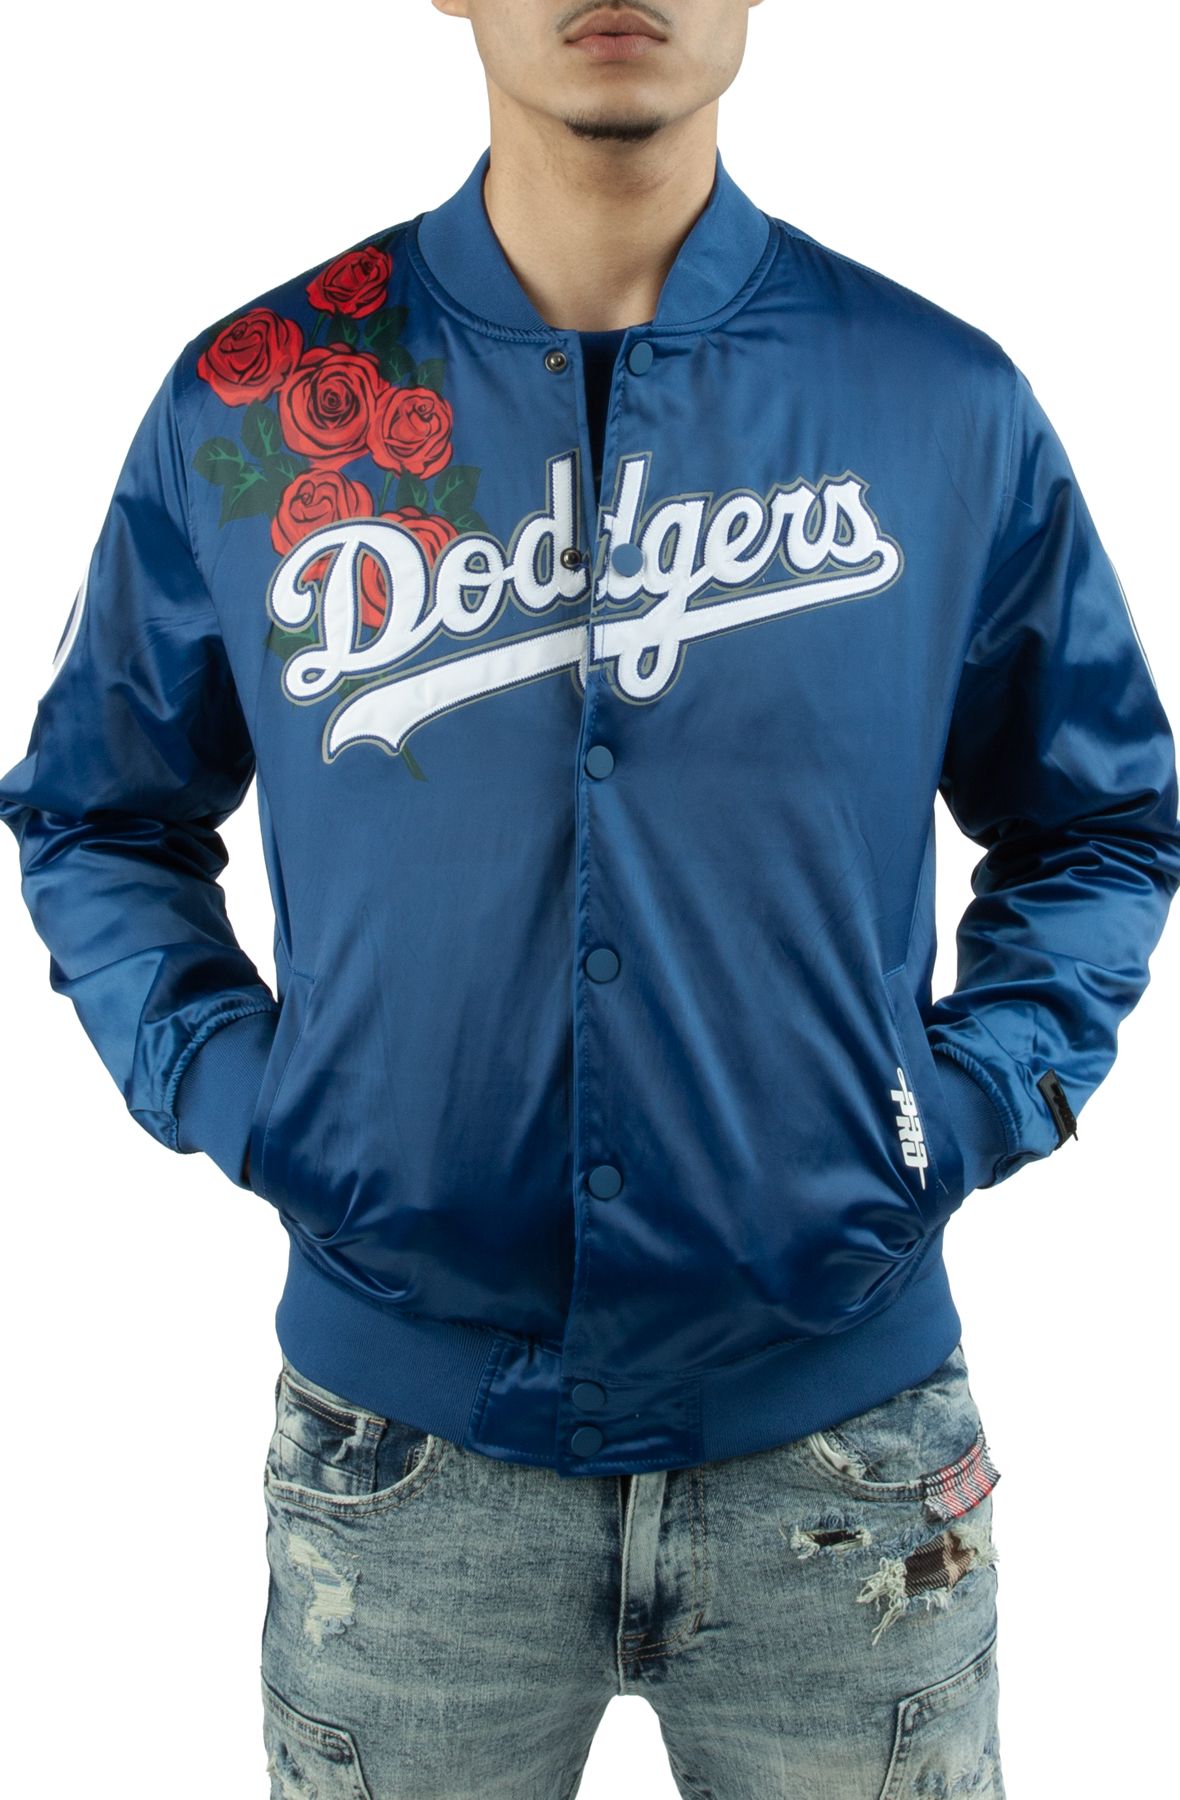 Pro Standard Dodgers Roses Satin Jacket Dodger Blue